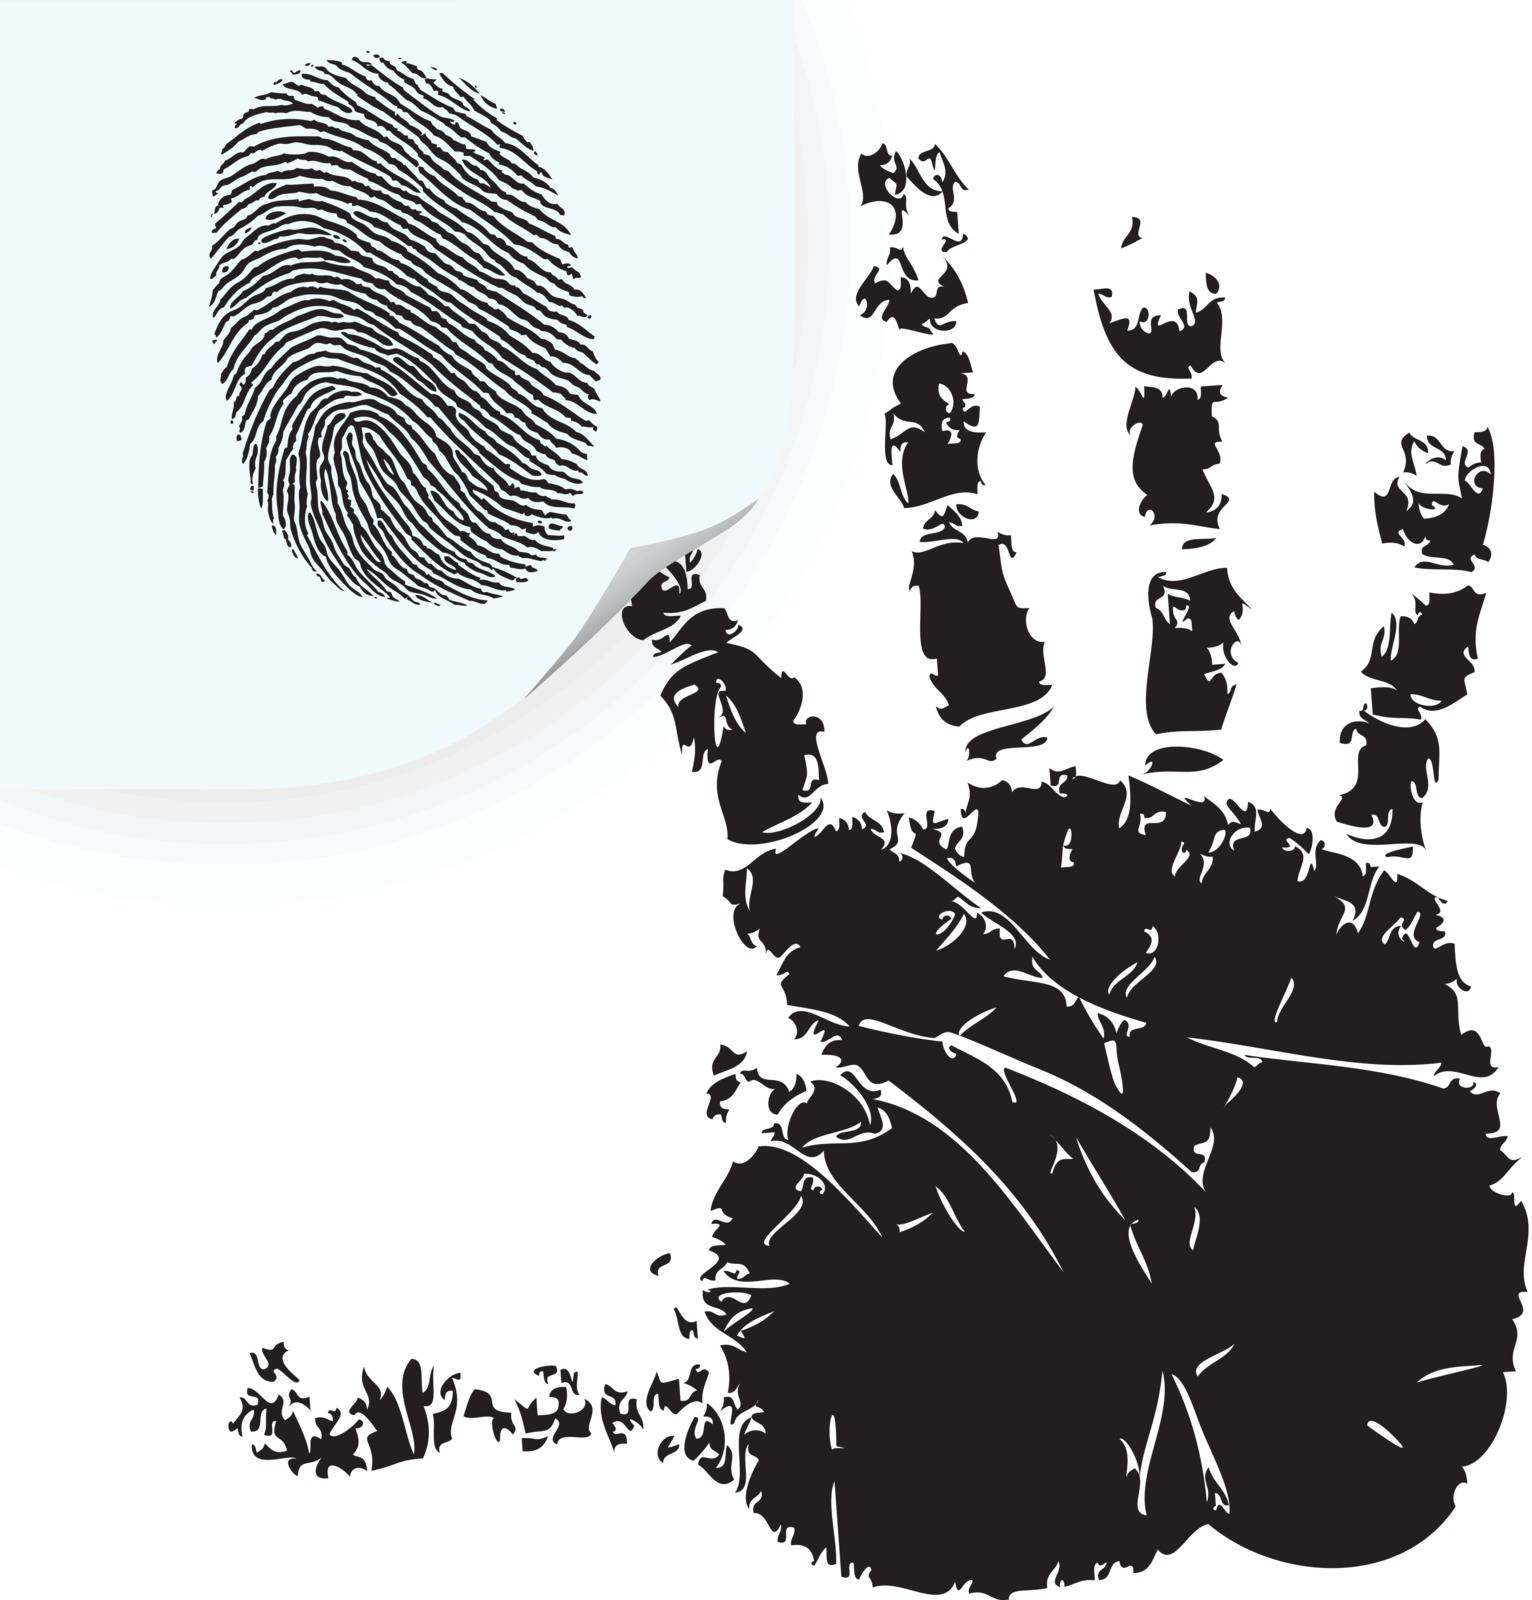 Fingerprint on the sticker and handprint. Vector illustration.